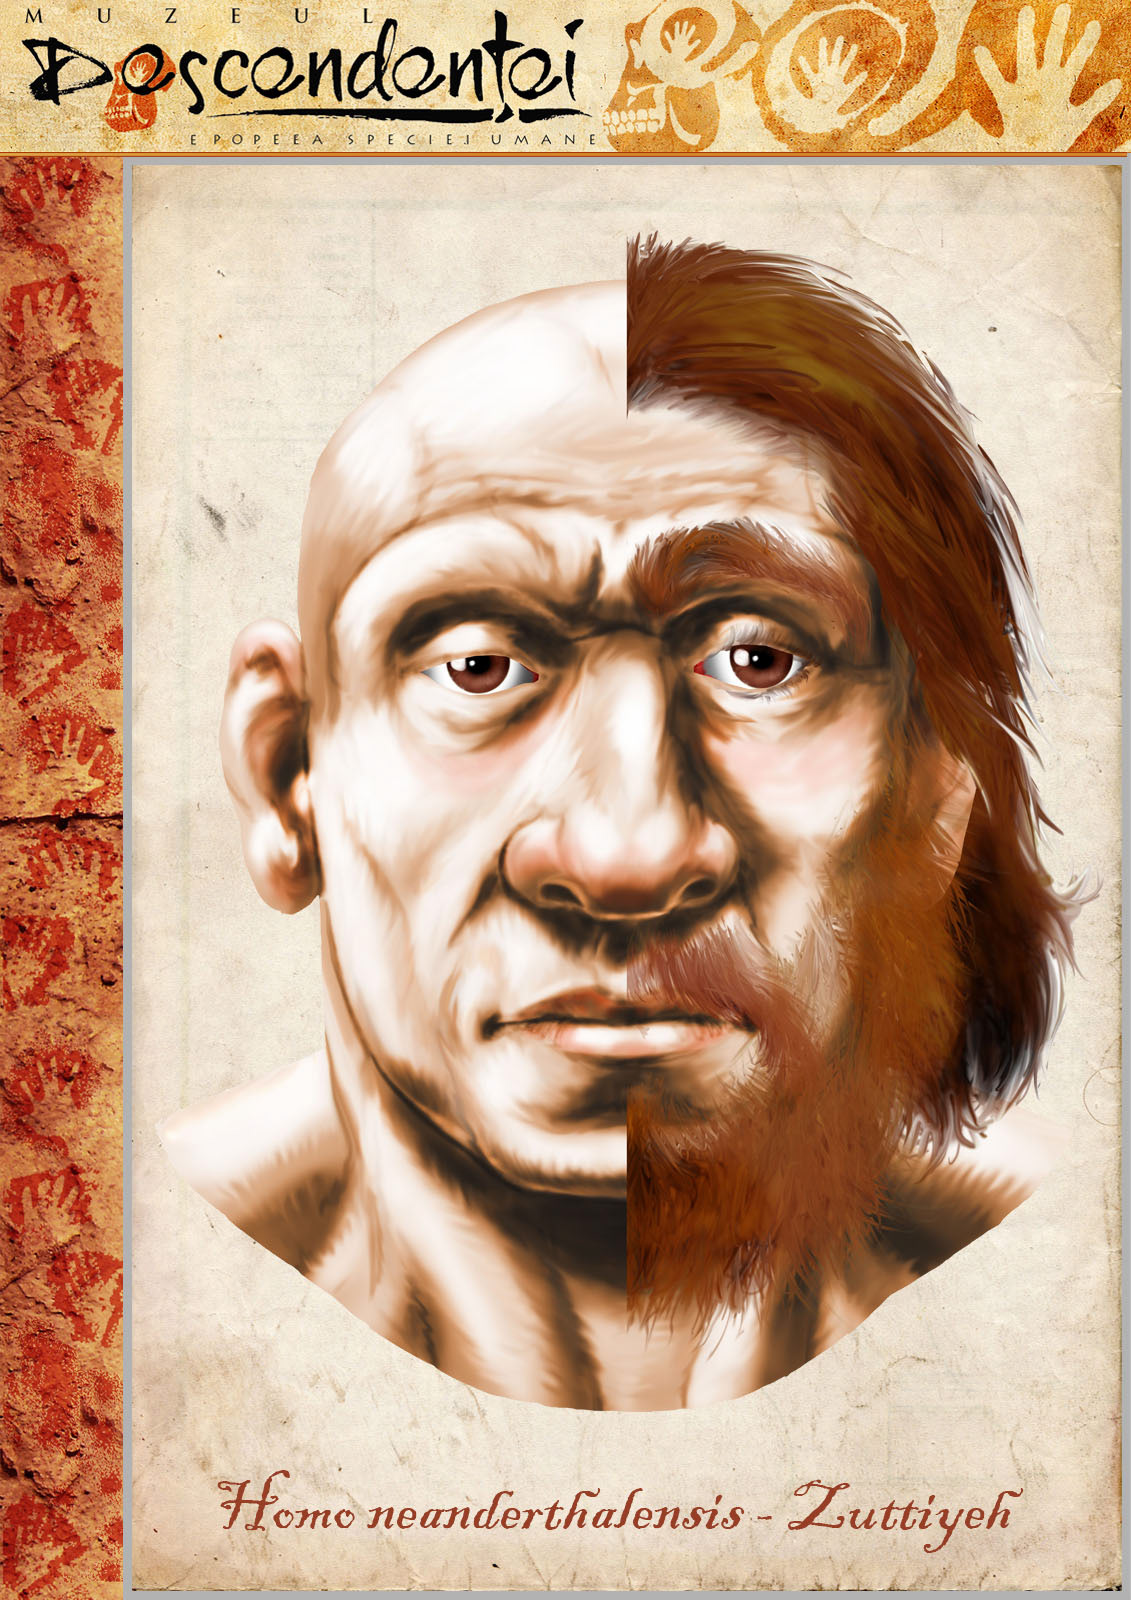 Zuttiyeh  homo neanderthal human evolution sahelanthropus ardipithecus kenyanthropus australopithecus paranthropus habilis ergaster erectus heidelbergensis Lucy